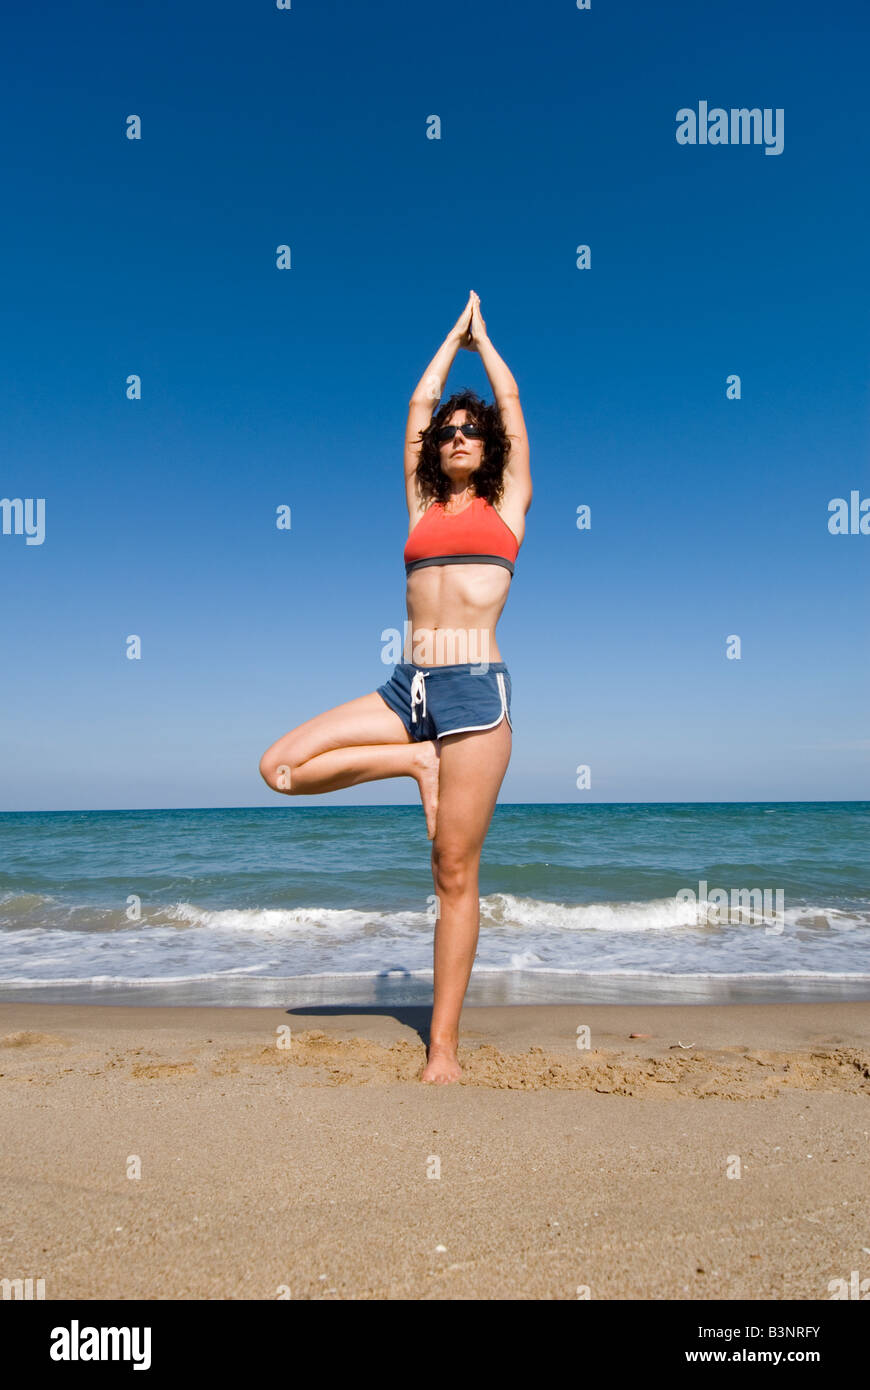 Parution du modèle fit young woman doing yoga étirements exercices sur une plage de sable Banque D'Images